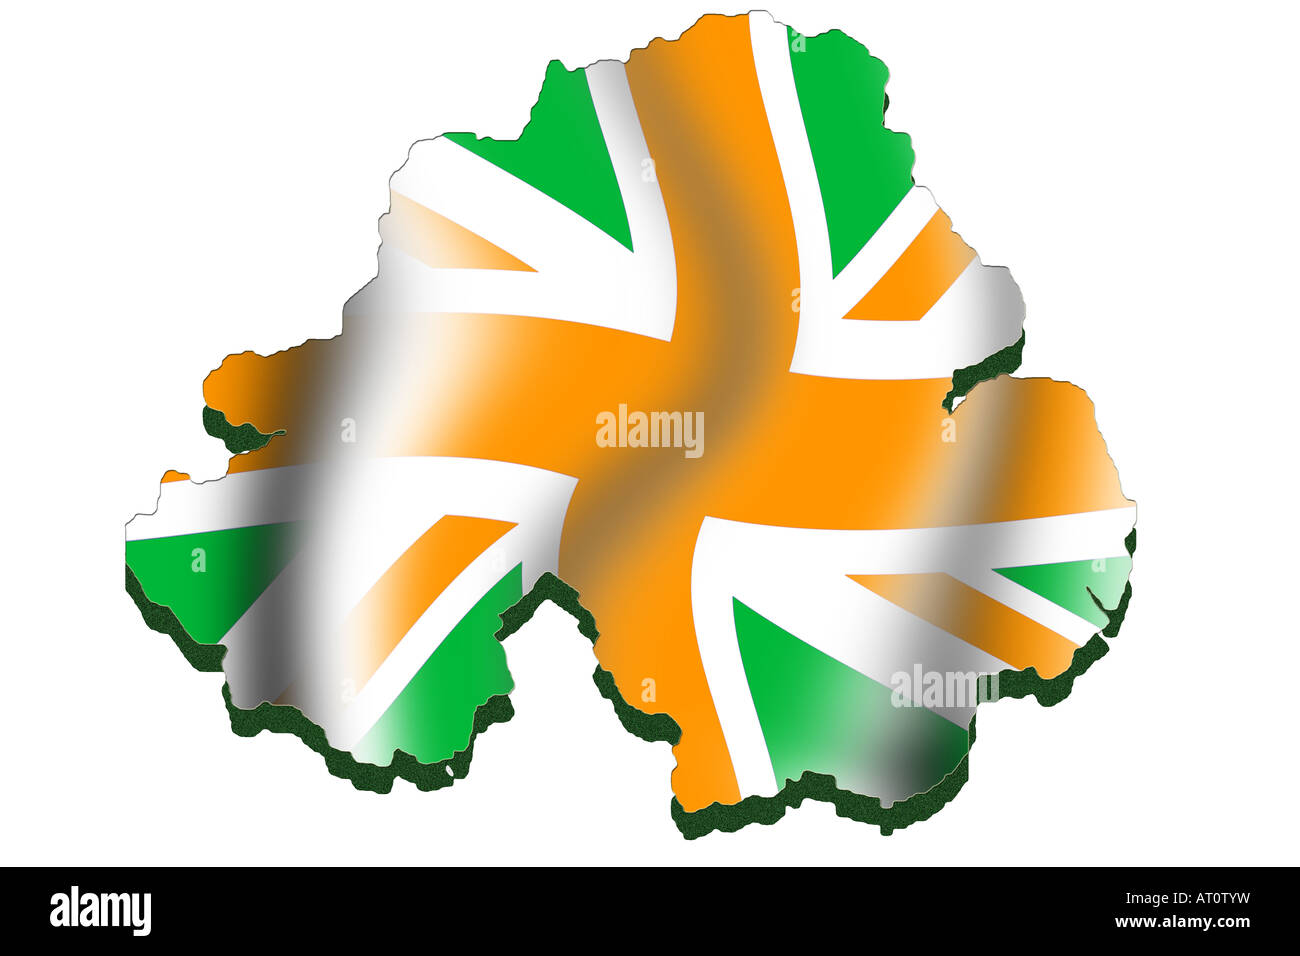 Mappa di contorno e bandiera di Irlanda del Nord - bandiera modificata rendendo dichiarazione politica sulle rivendicazioni di entrambe le comunità Foto Stock